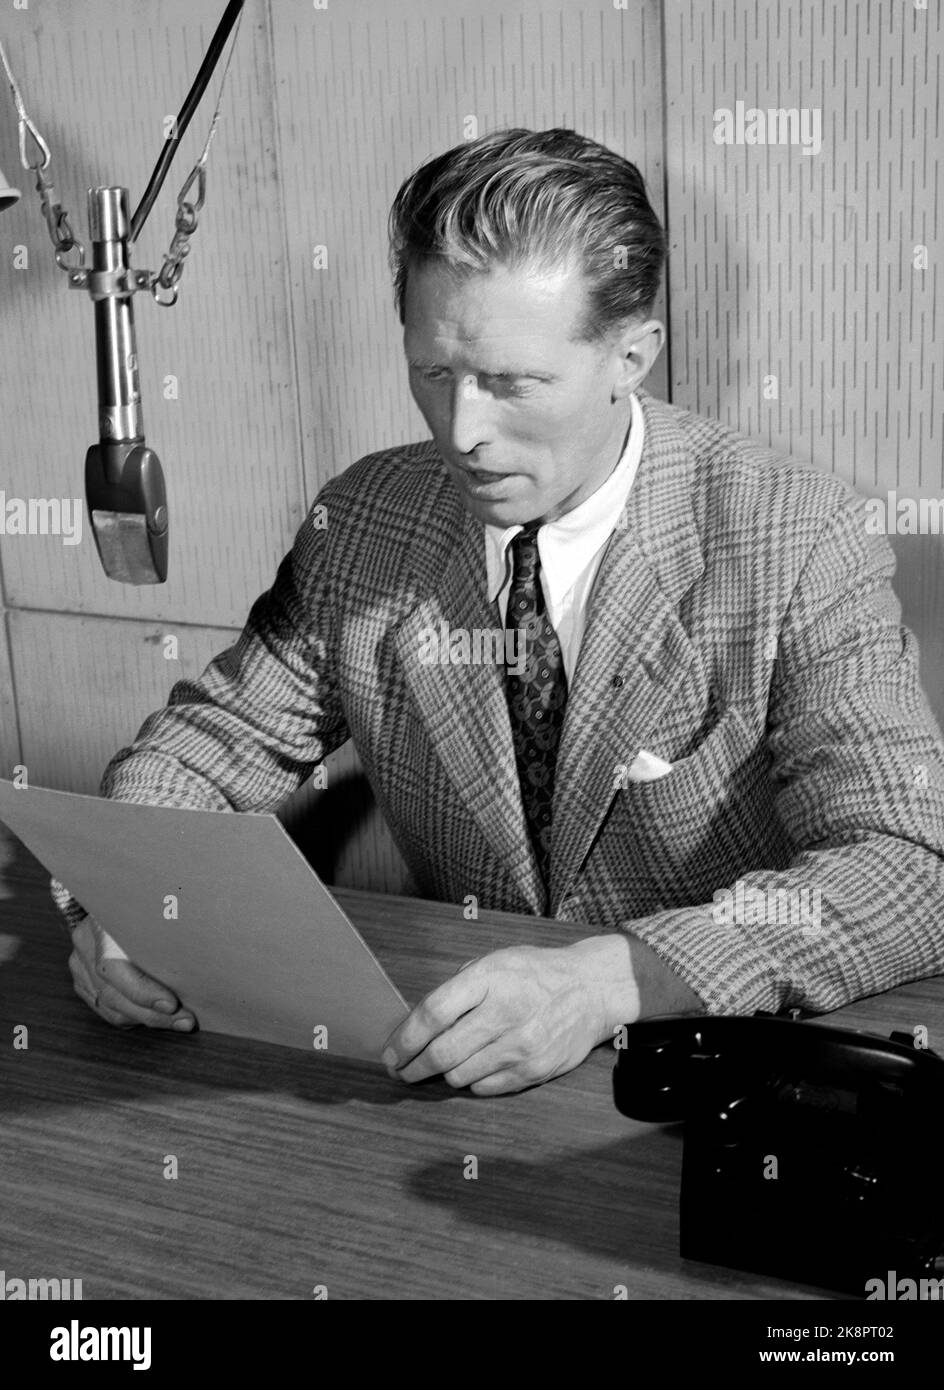 Oslo März 1949 bekannte Stimmen in NRK Radio. Hier Gunnar Nygaard in Aktion am Mikrofon. Nygaard war unter anderem der Leiter des Kurzwellendienstes. Im Ausland, von Beginn der Kurzwellenausstrahlungen an. Foto: Current / NTB Stockfoto